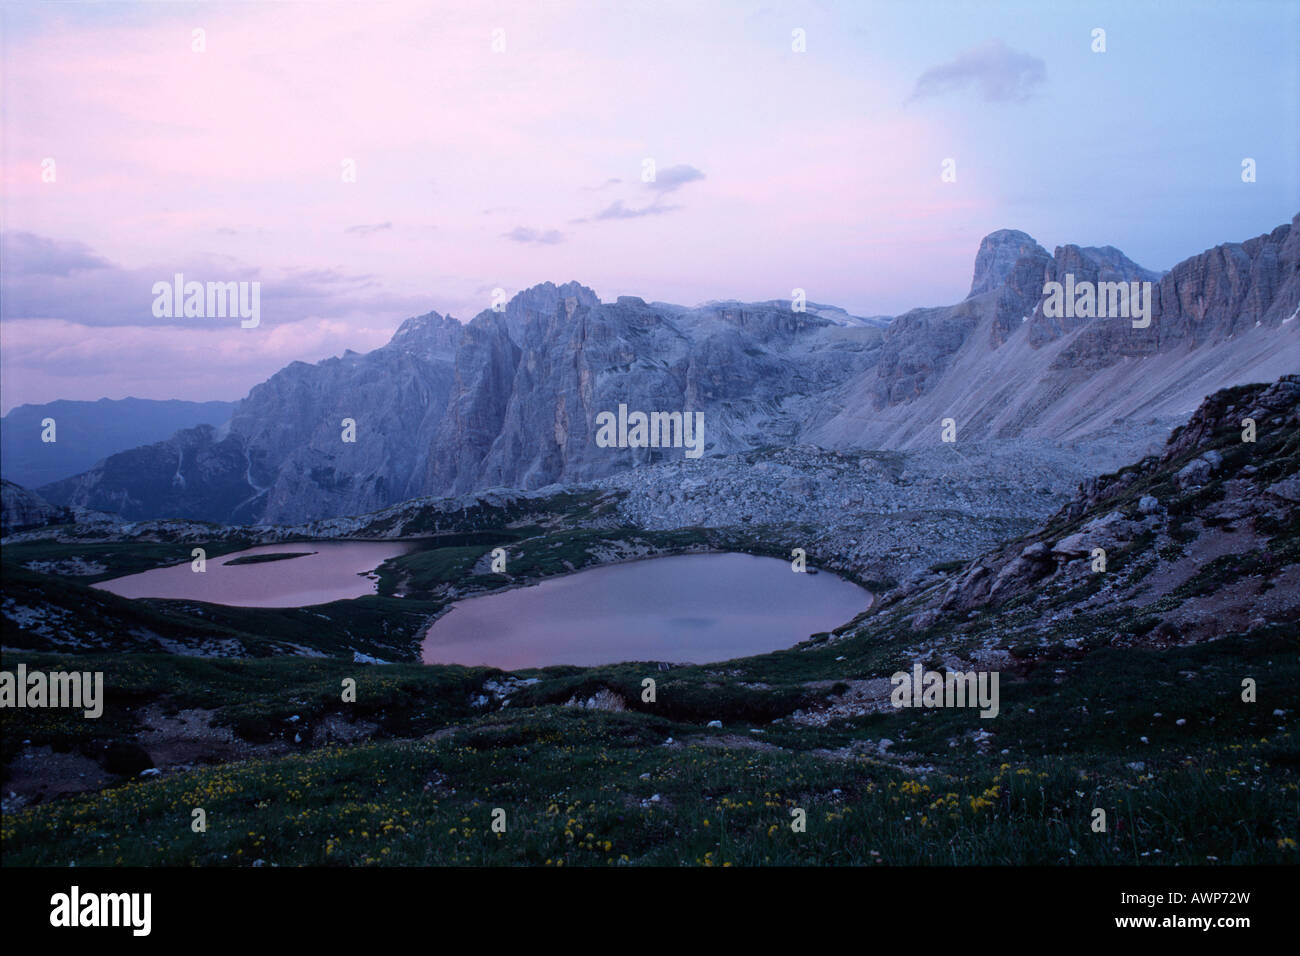 Les lacs alpins, Mt. Einserkogel, Dolomites de Sexten, Bolzano-Bozen, Italie, Europe Banque D'Images